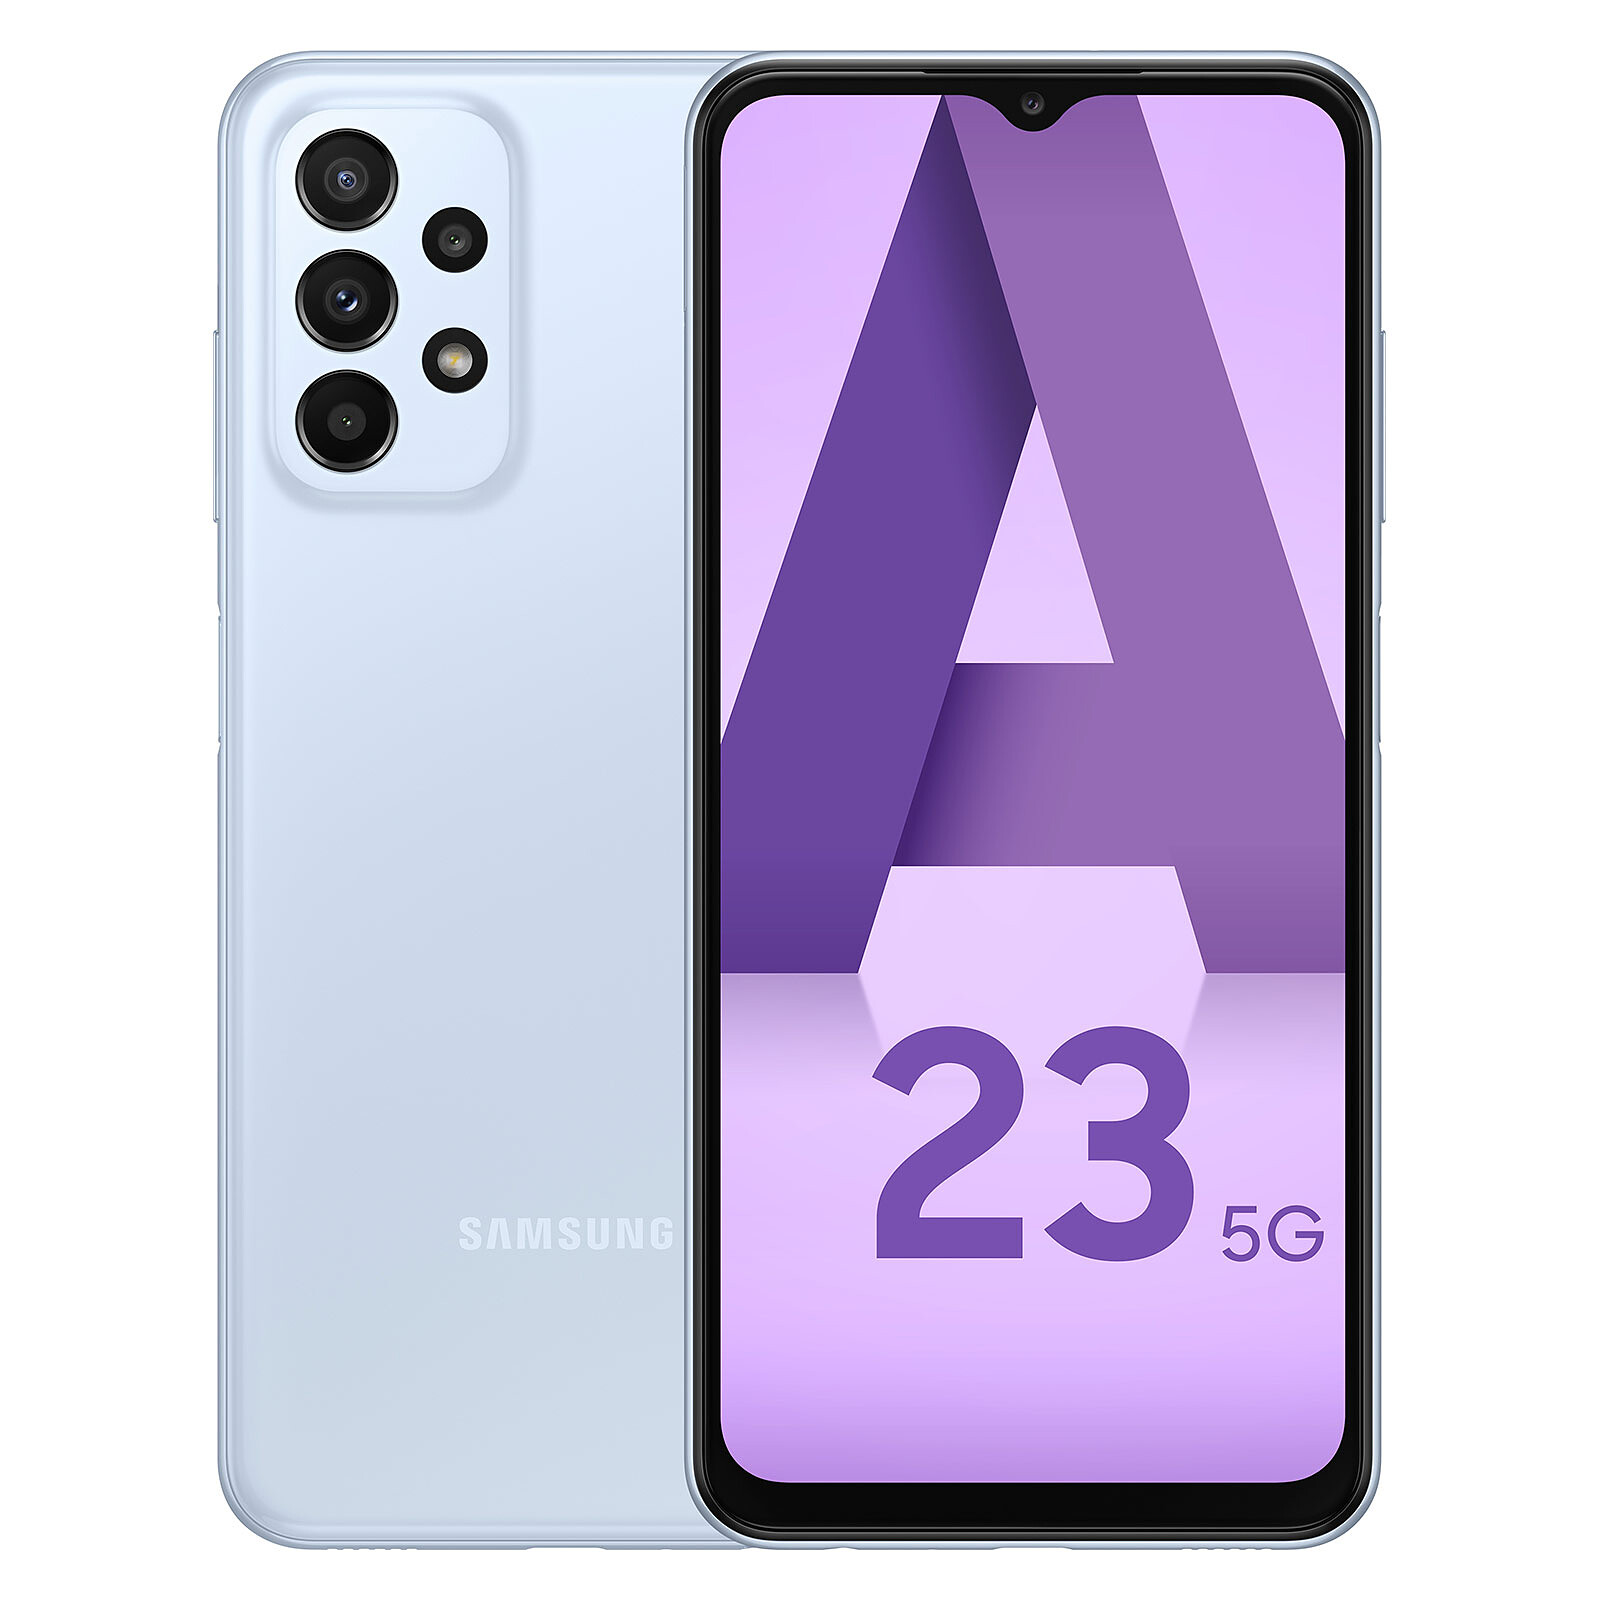 Buy Samsung Galaxy A23 LTE (6GB/128GB) in Light Blue